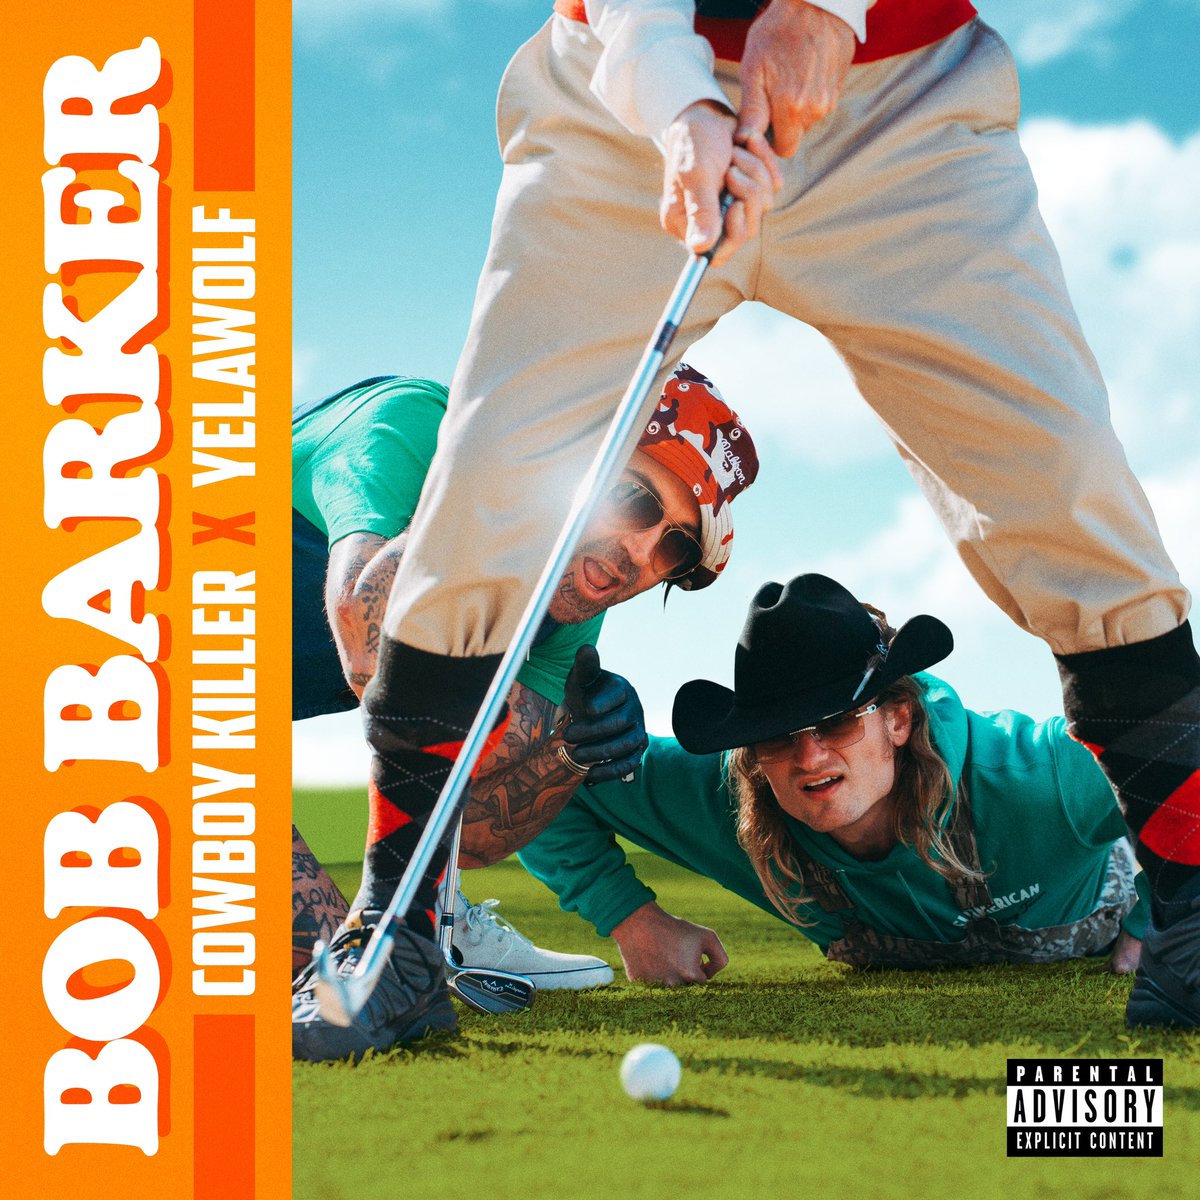 “BOB BARKER” OUT NOW !!! #SLUMERICAN vyd.co/Bobbarker